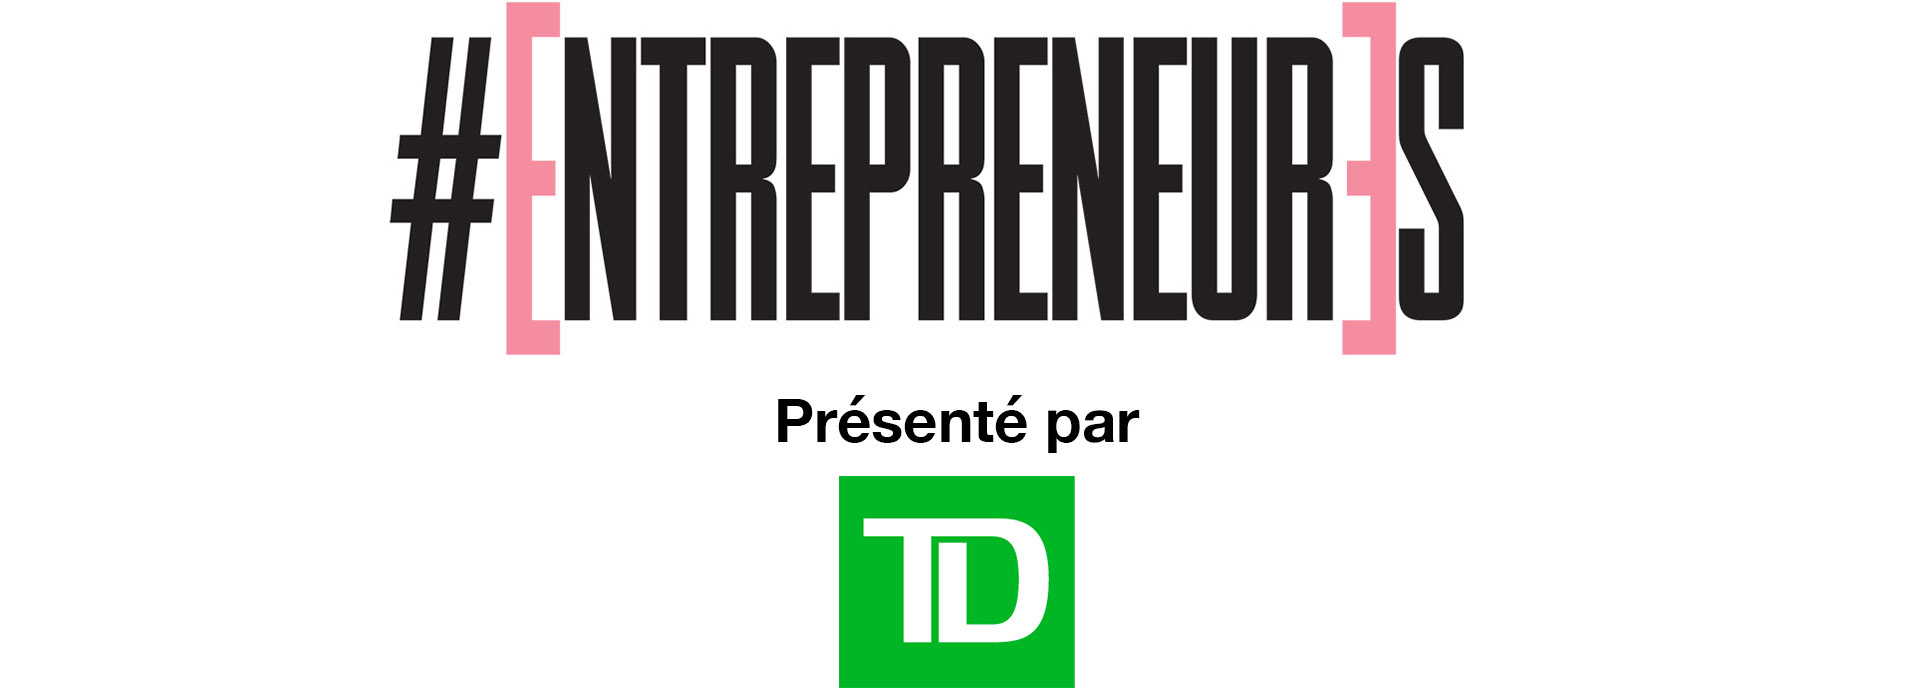 EntrepreneurEs présenté par TD